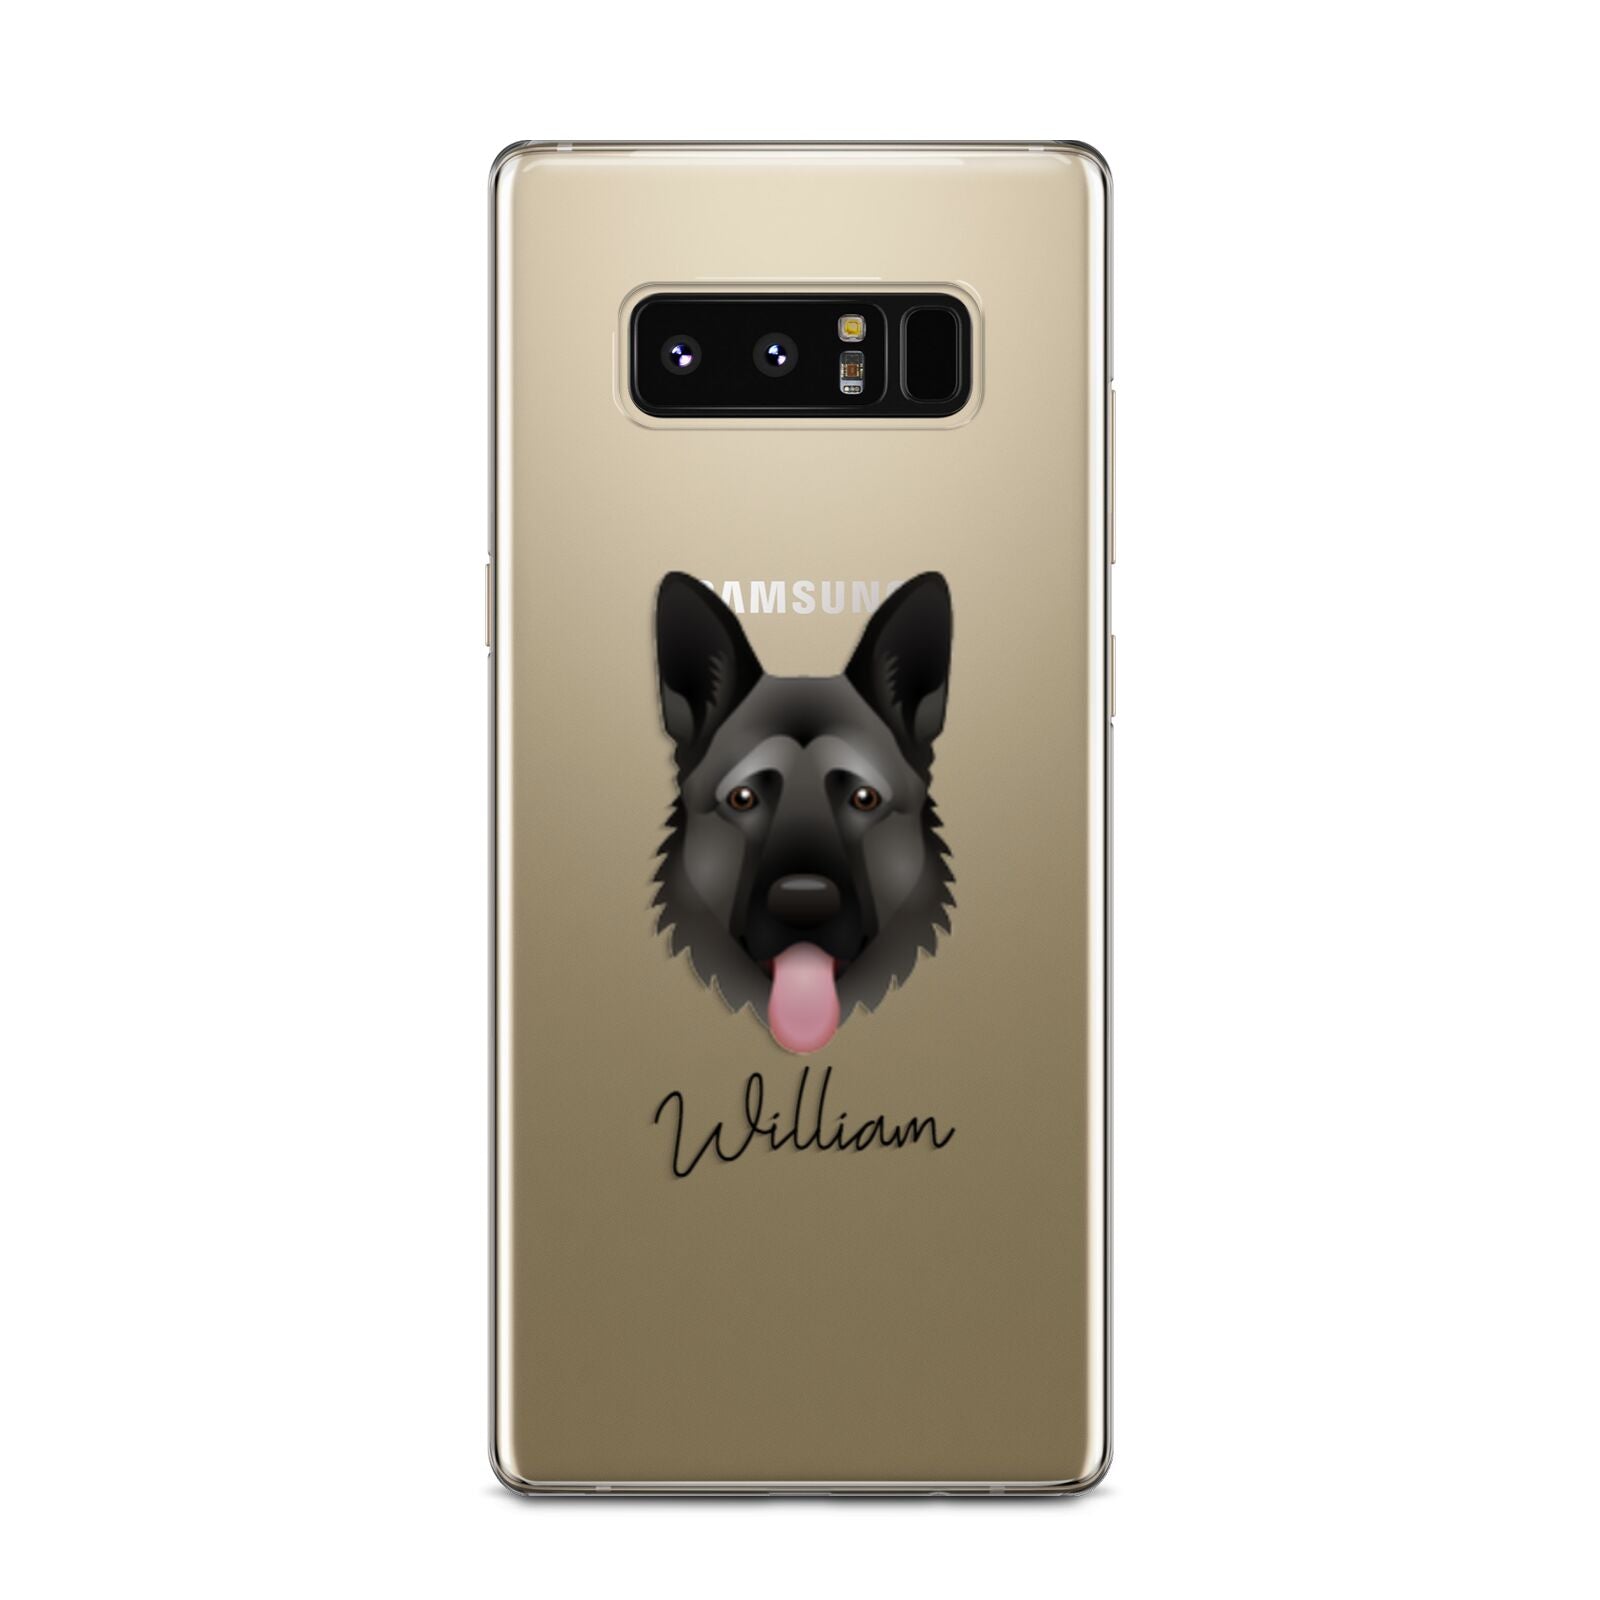 German Shepherd Personalised Samsung Galaxy Note 8 Case